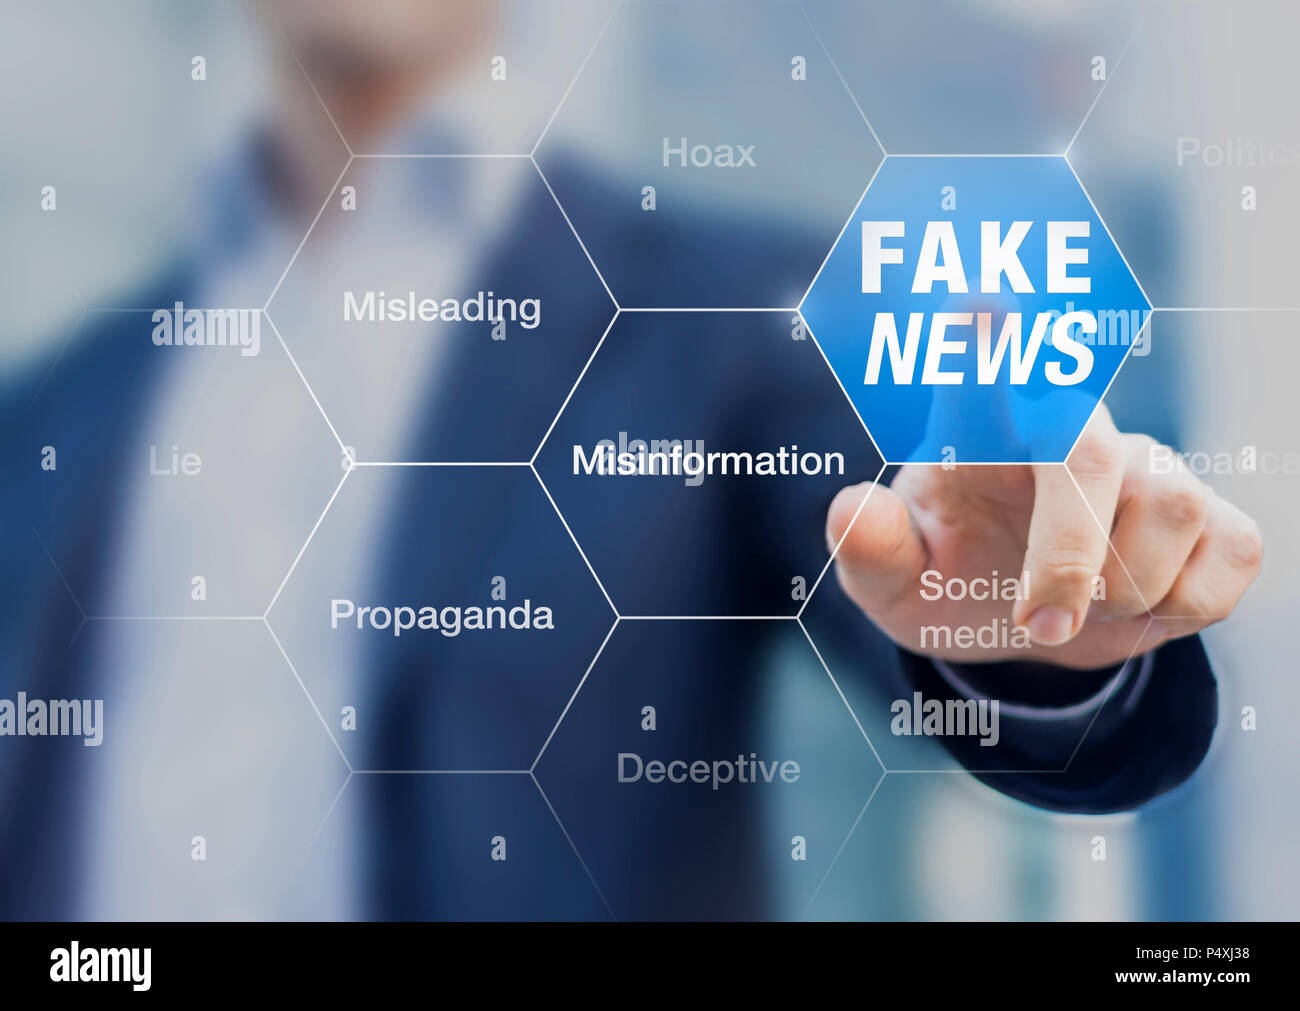 Fake News concept avec une personne montrant tendancieux ou trompeurs, histoires, propagande, mensonges, fabrication de faits pour contrôler ou manipuler l'opinion sur internet Banque D'Images